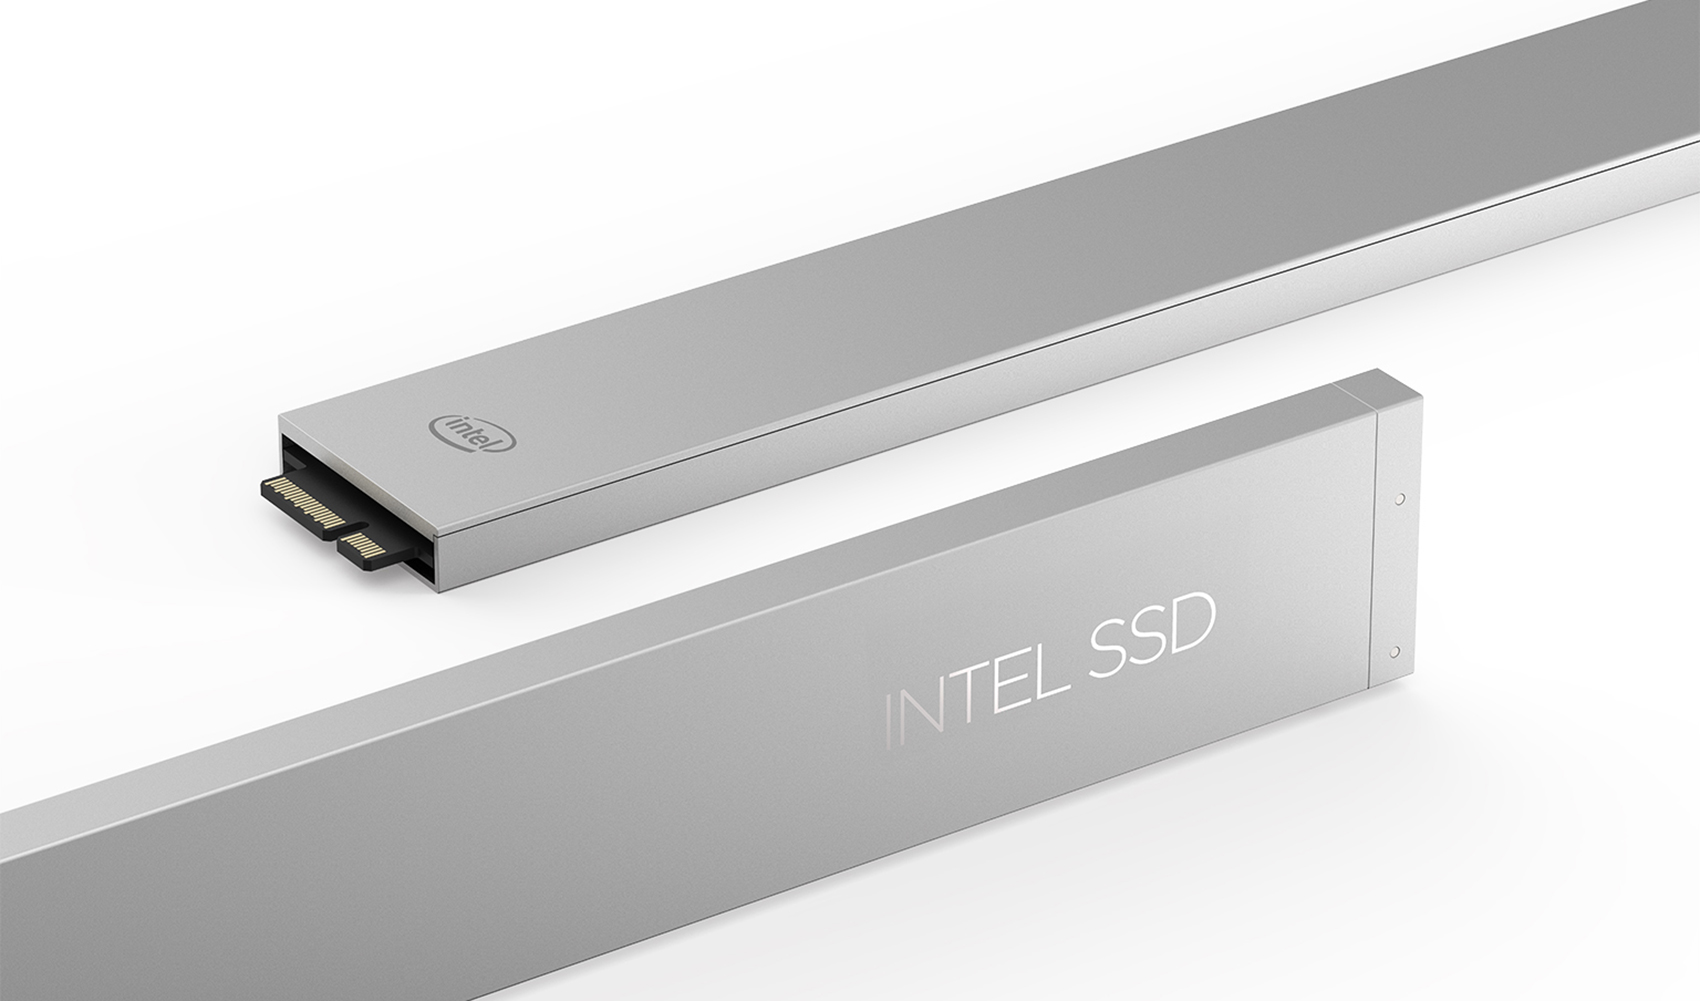 La serie Intel SSD DC P4500 viene con forma de 'regla', que proporciona una densidad de almacenamiento sin precedentes...